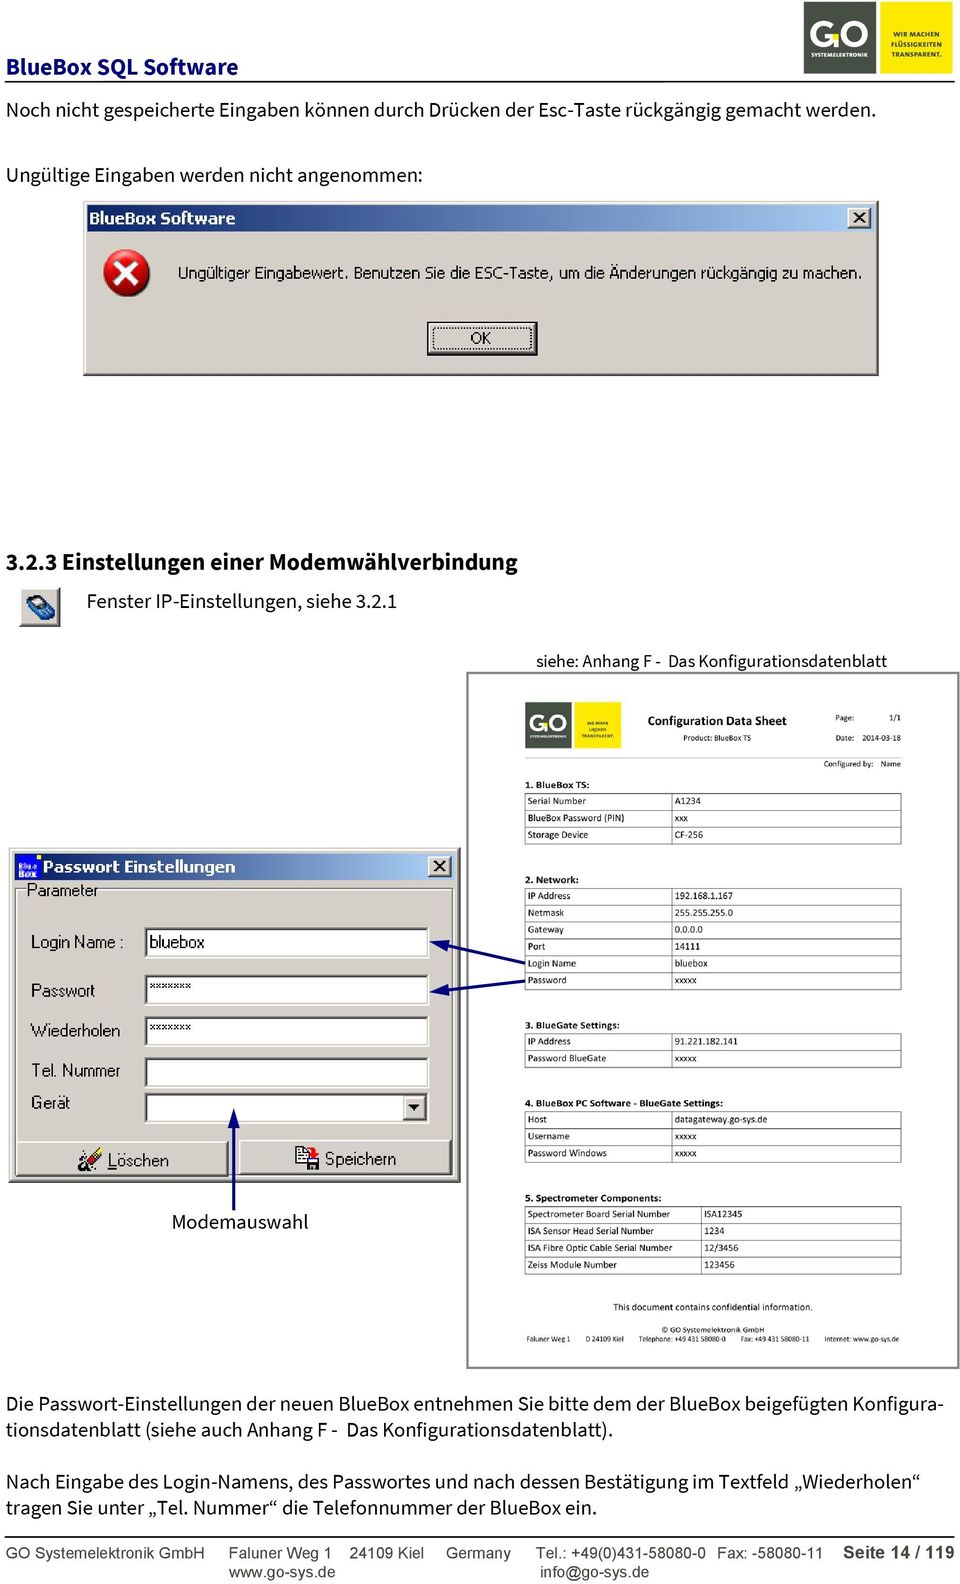 1 siehe: Anhang F - Das Konfigurationsdatenblatt Modemauswahl Die Passwort-Einstellungen der neuen BlueBox entnehmen Sie bitte dem der BlueBox beigefügten Konfigurationsdatenblatt (siehe